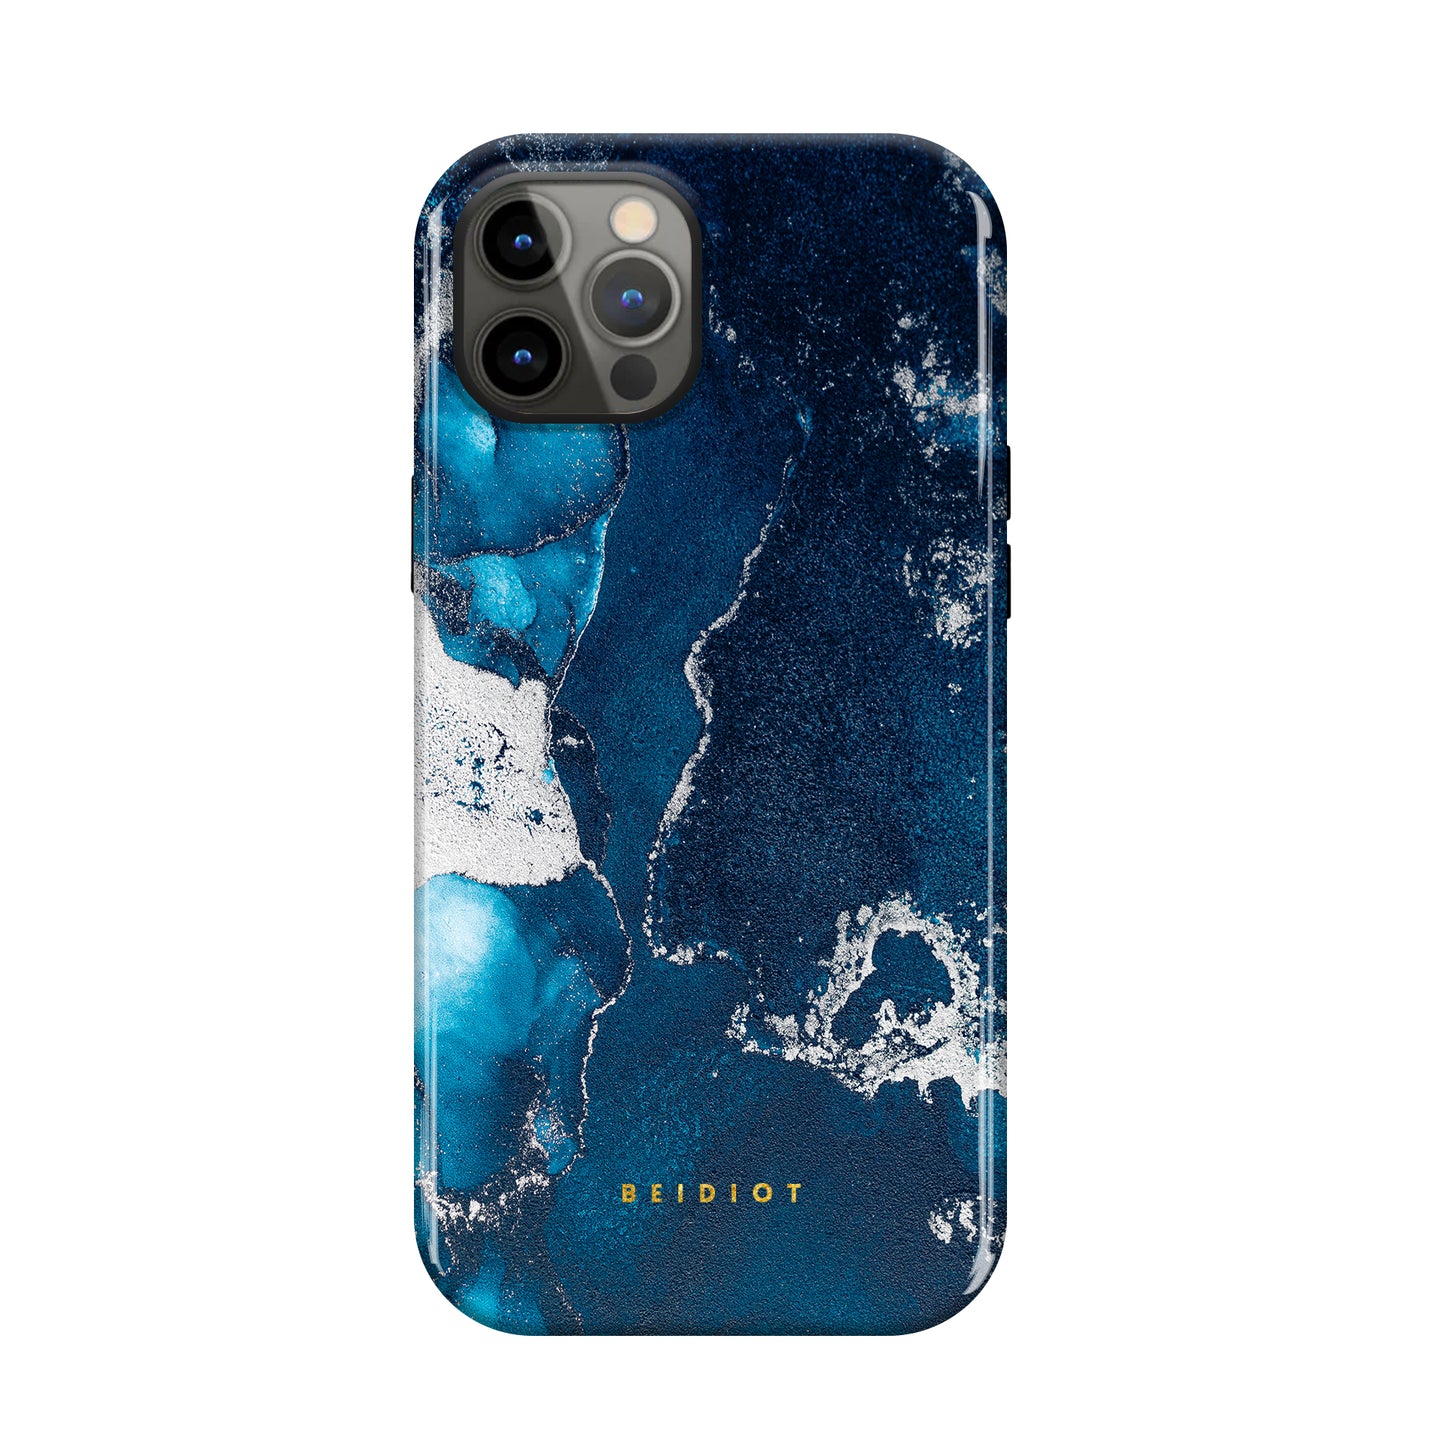 Oceanic Charm iPhone Case